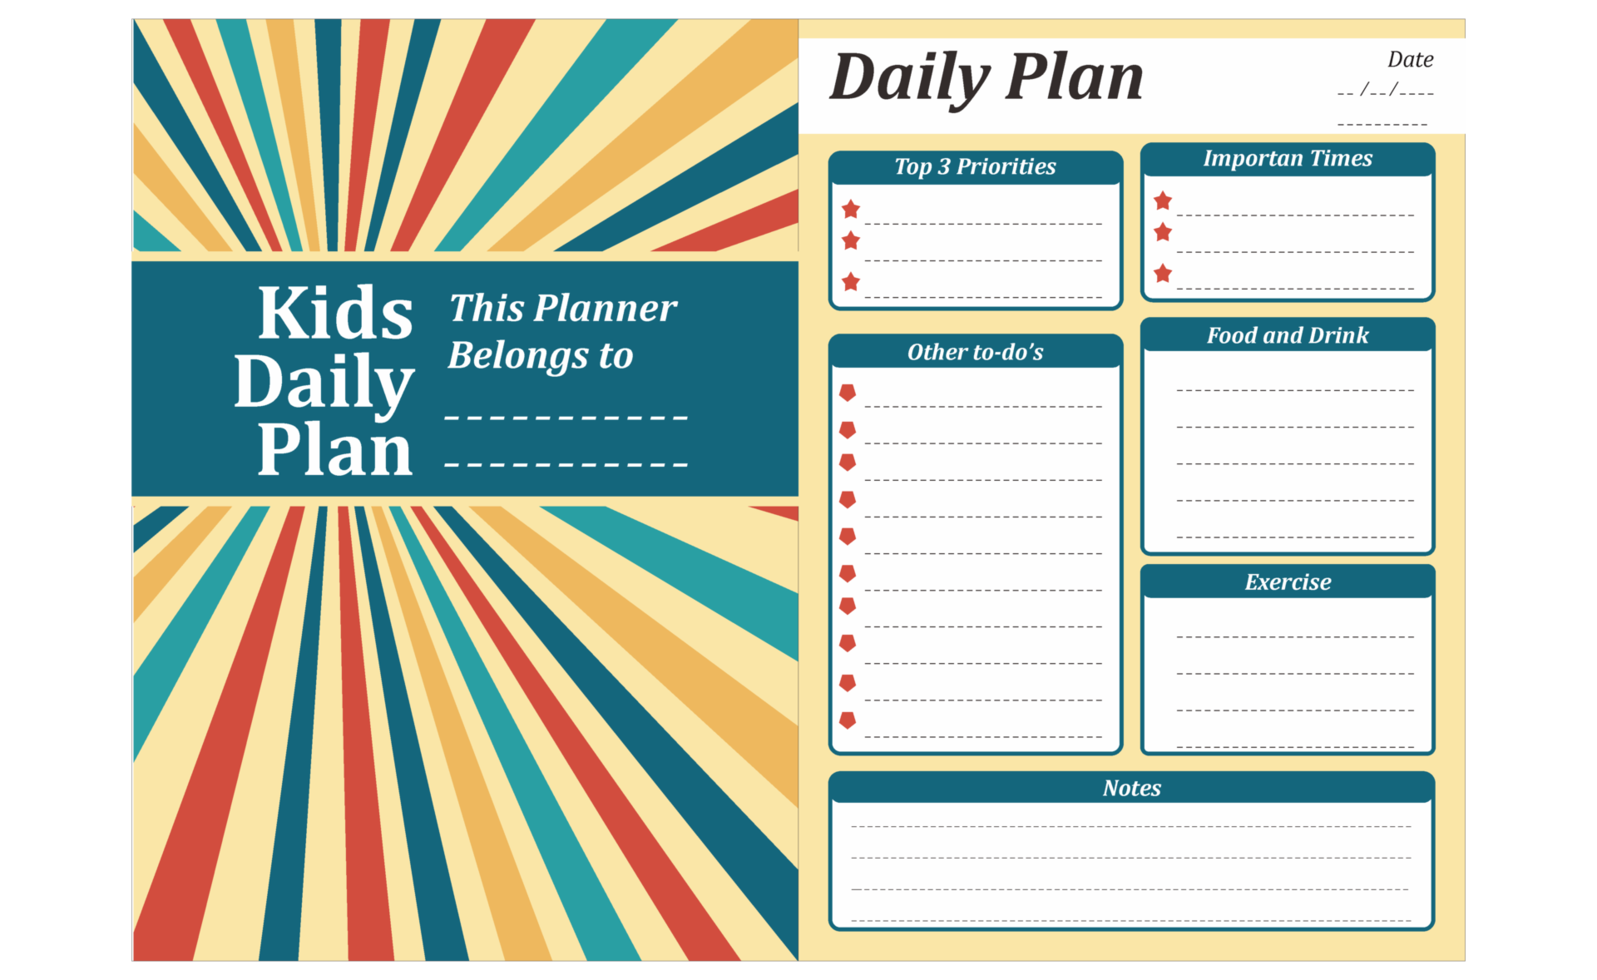 diseño de plan diario para niños con tema vintage retro de rayas png